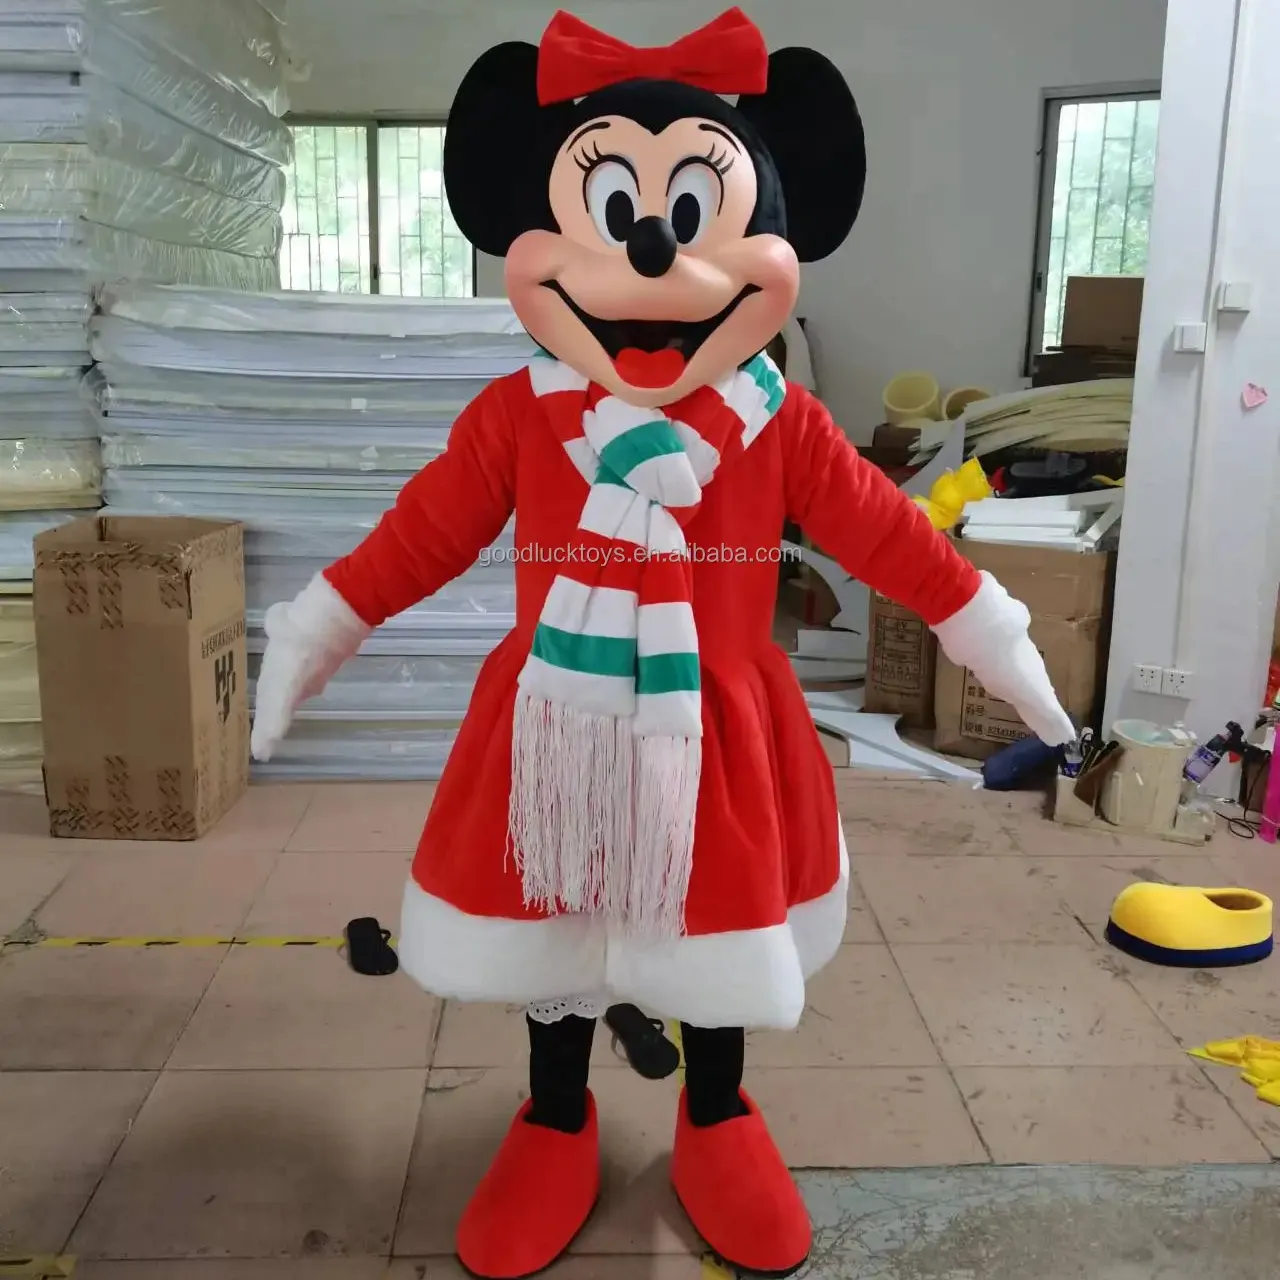 Di alta qualità 3D personalizzato topolino e minnie costume mascotte disney topolino costume mascotte